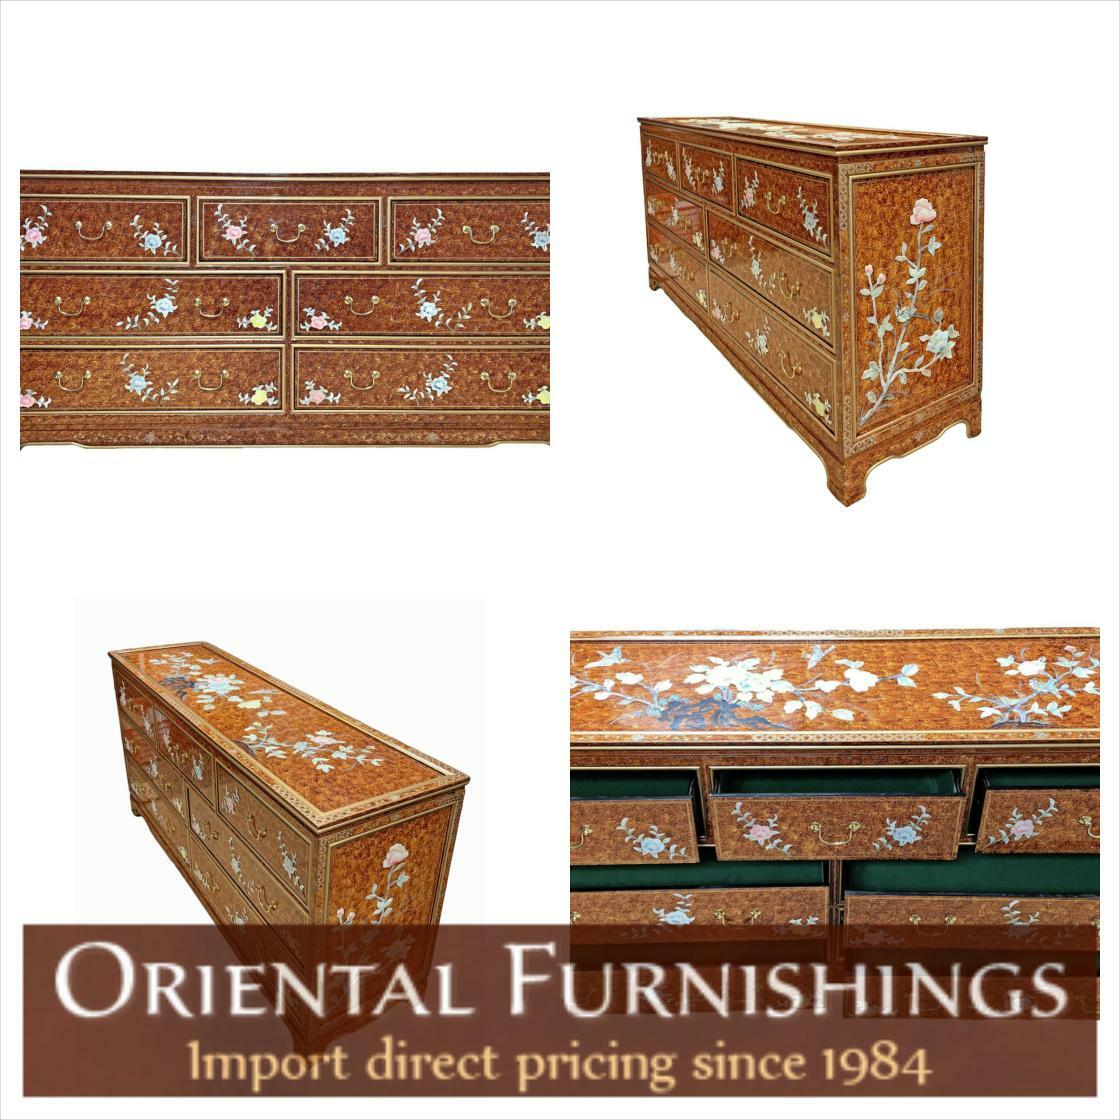 #blueandwhite 64' Oriental Dresser inlaid Mother of Pearl Floral Design Seen here: bit.ly/4aRdPZT